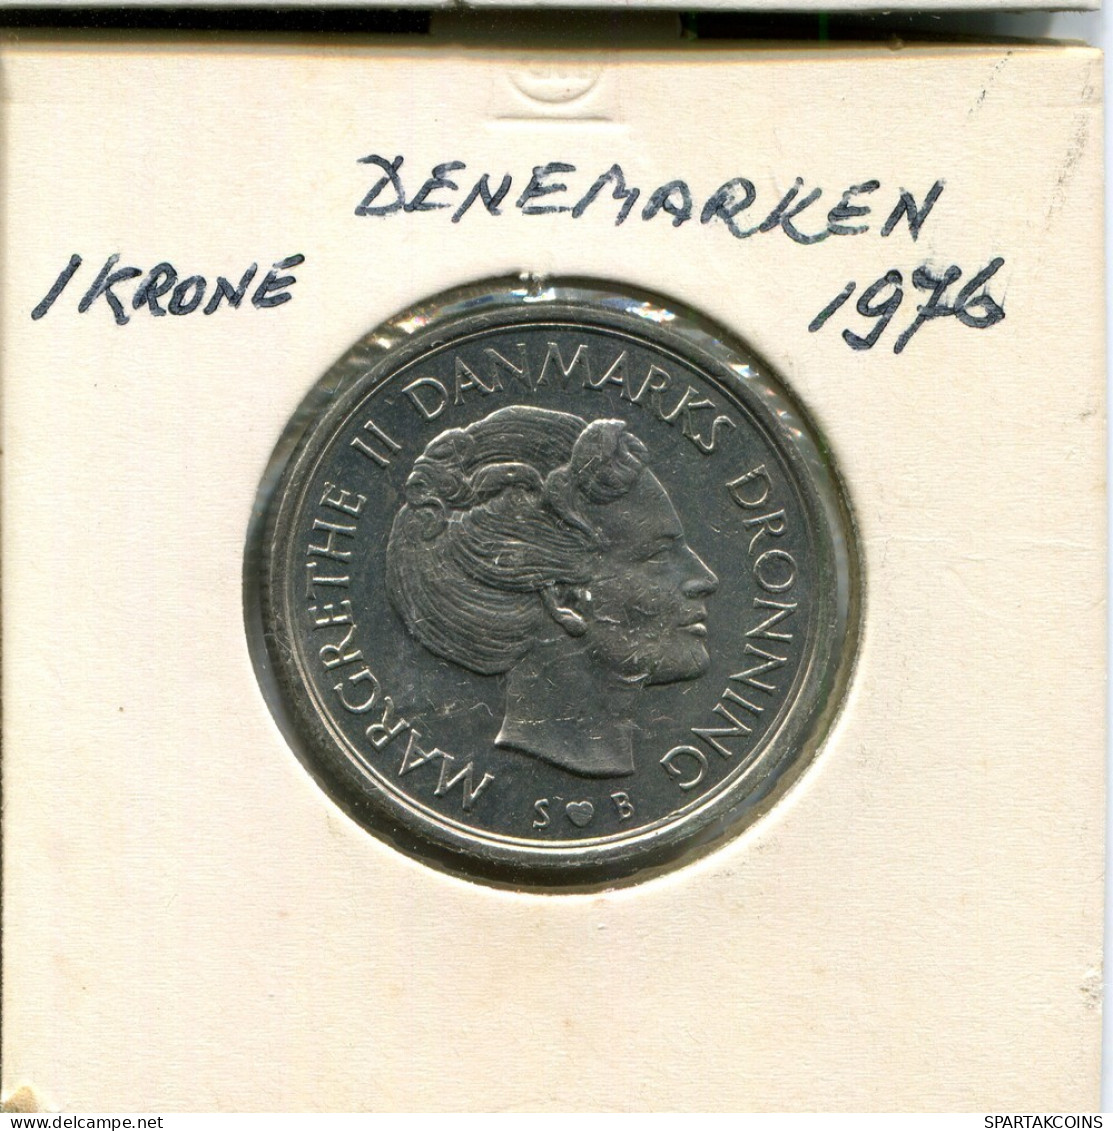 1 KRONE 1976 DANEMARK DENMARK Münze #AR322.D.A - Denemarken